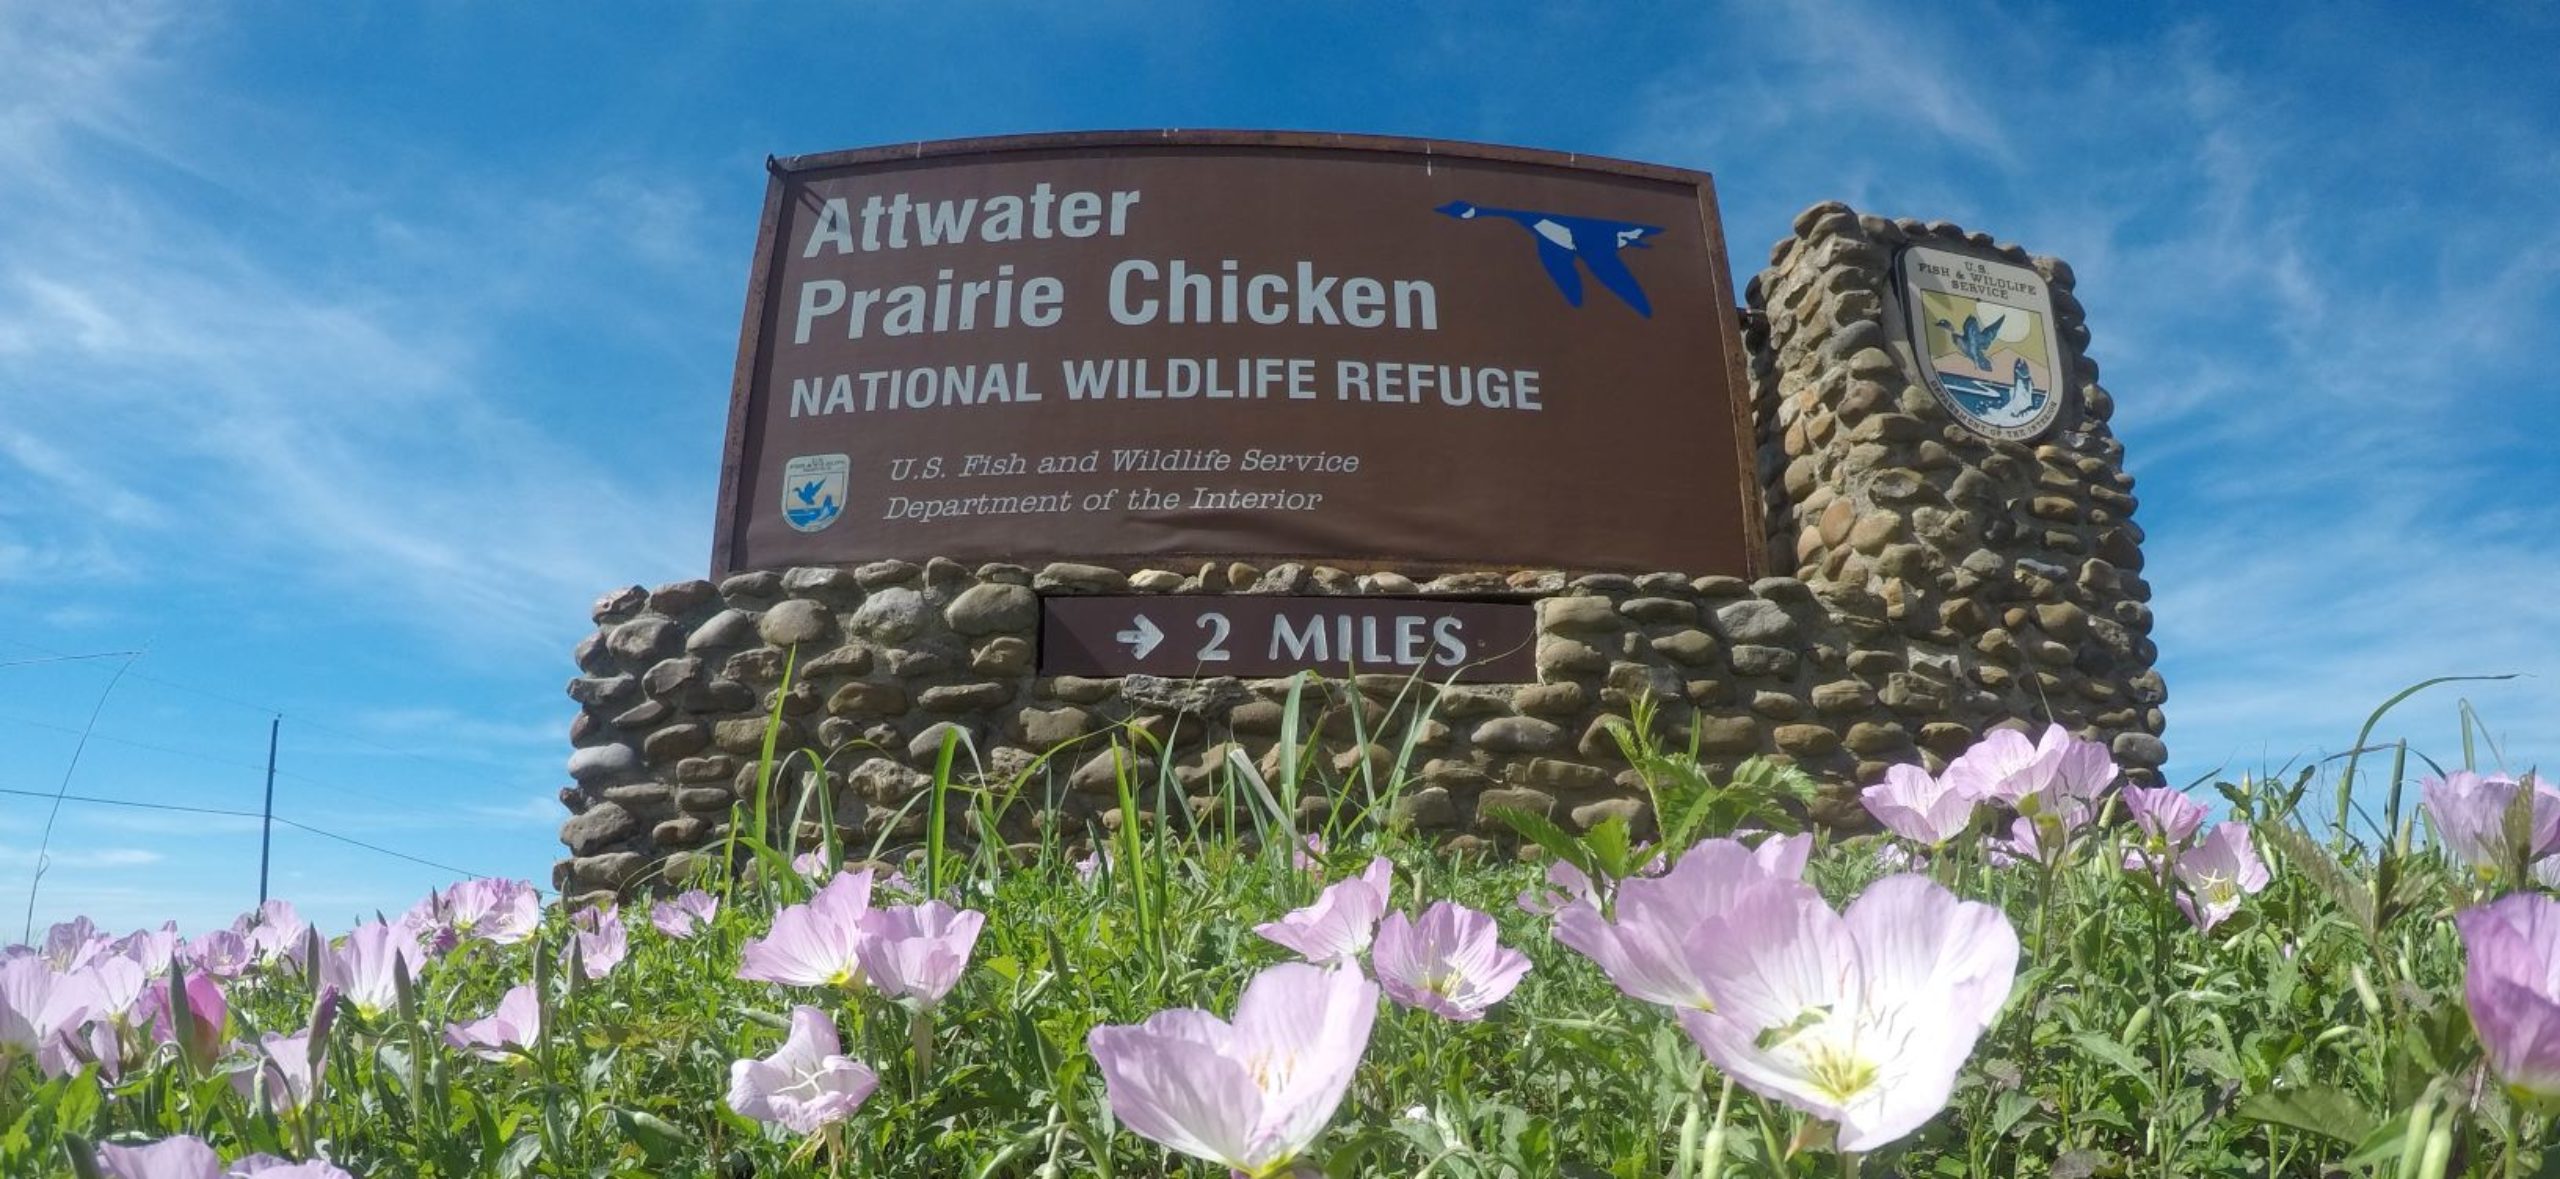 Friends of Attwater Prairie Chicken Refuge